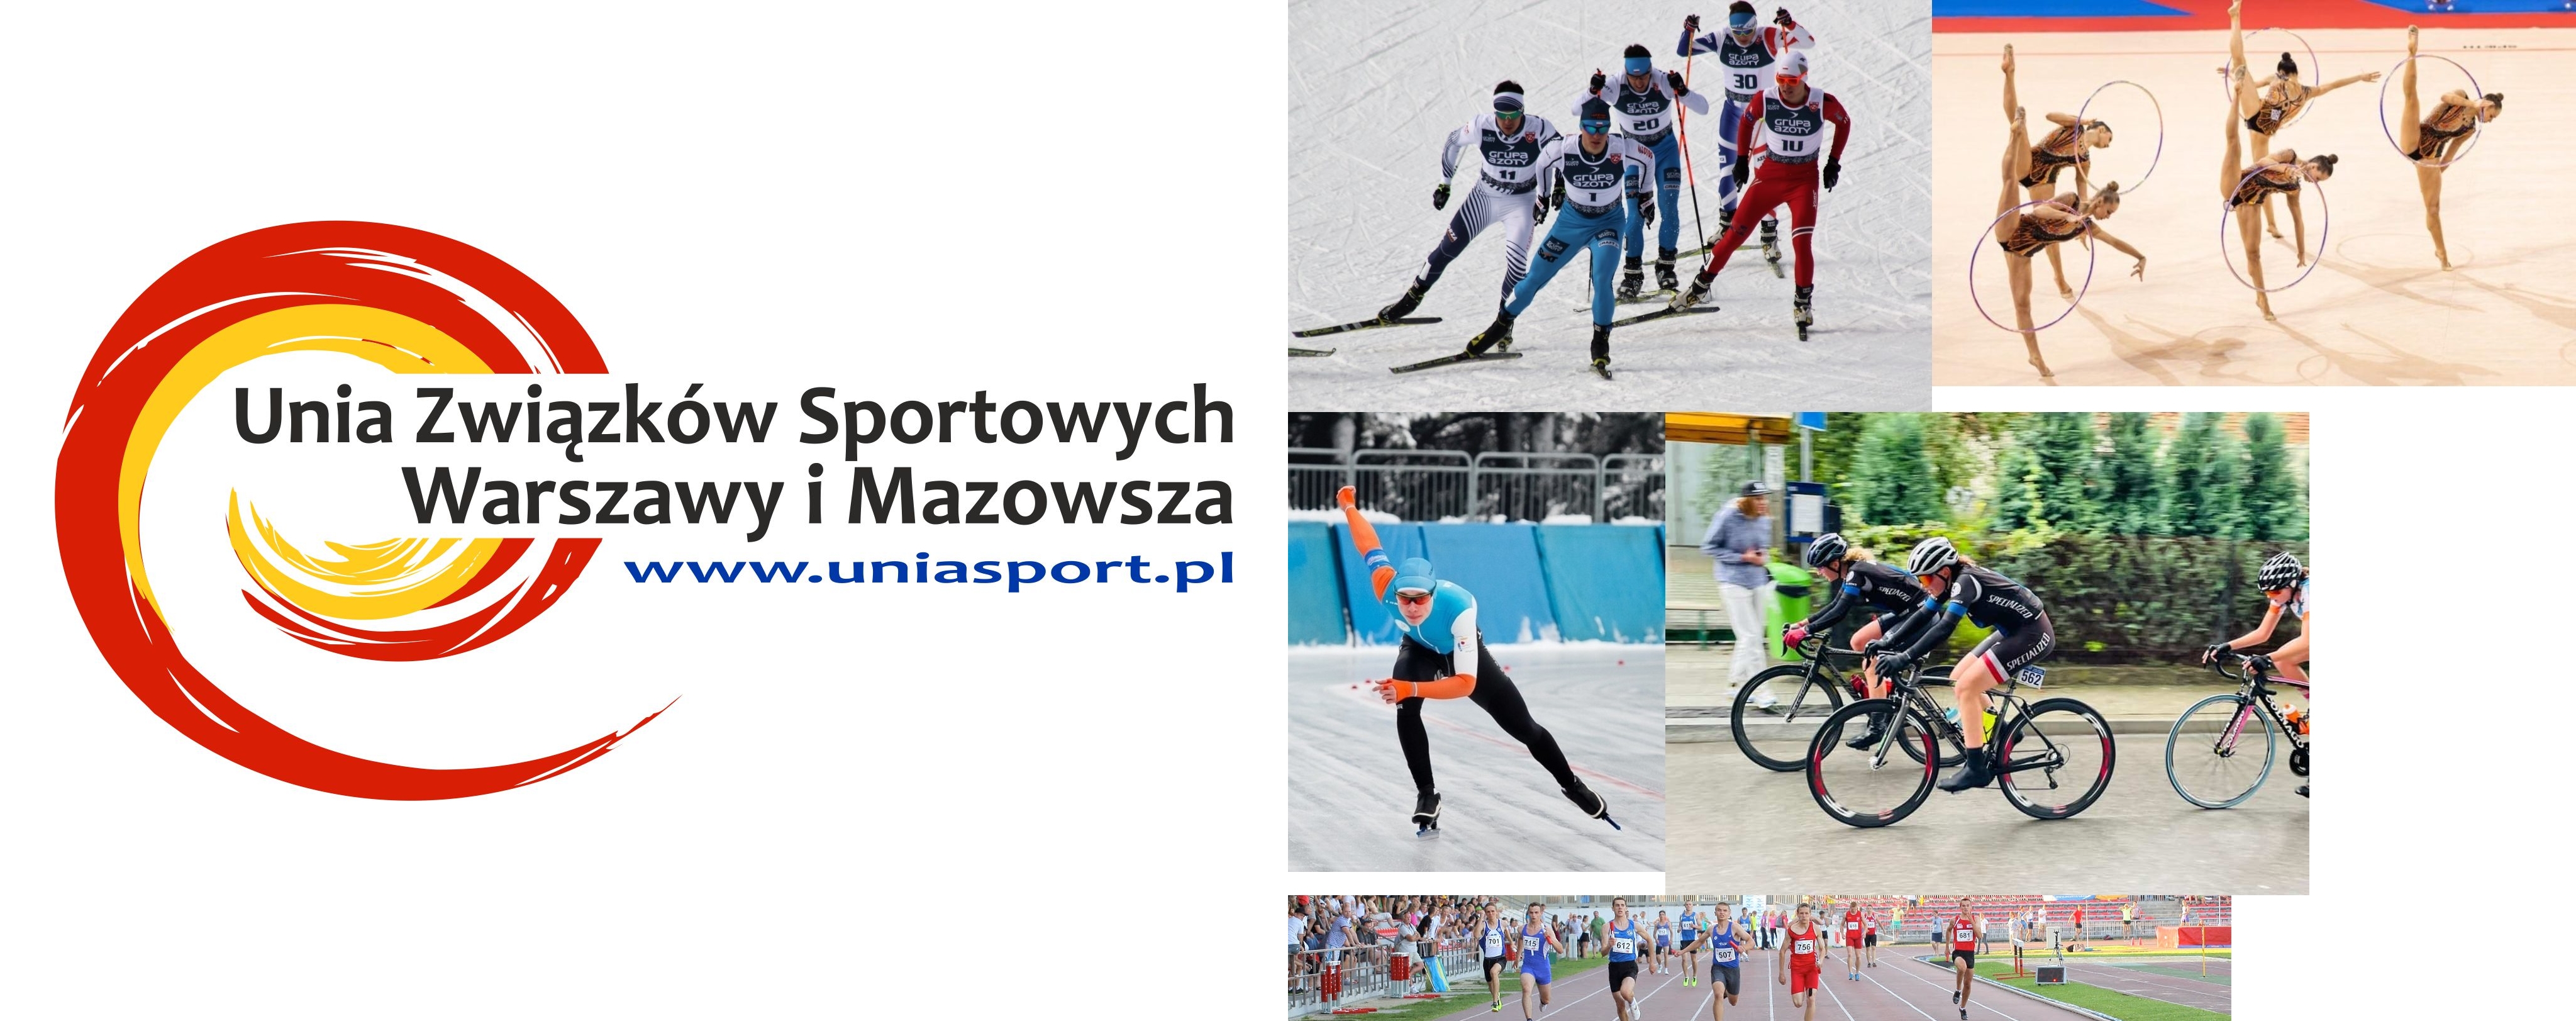 Unia Związków Sportowych Warszawy i Mazowsza